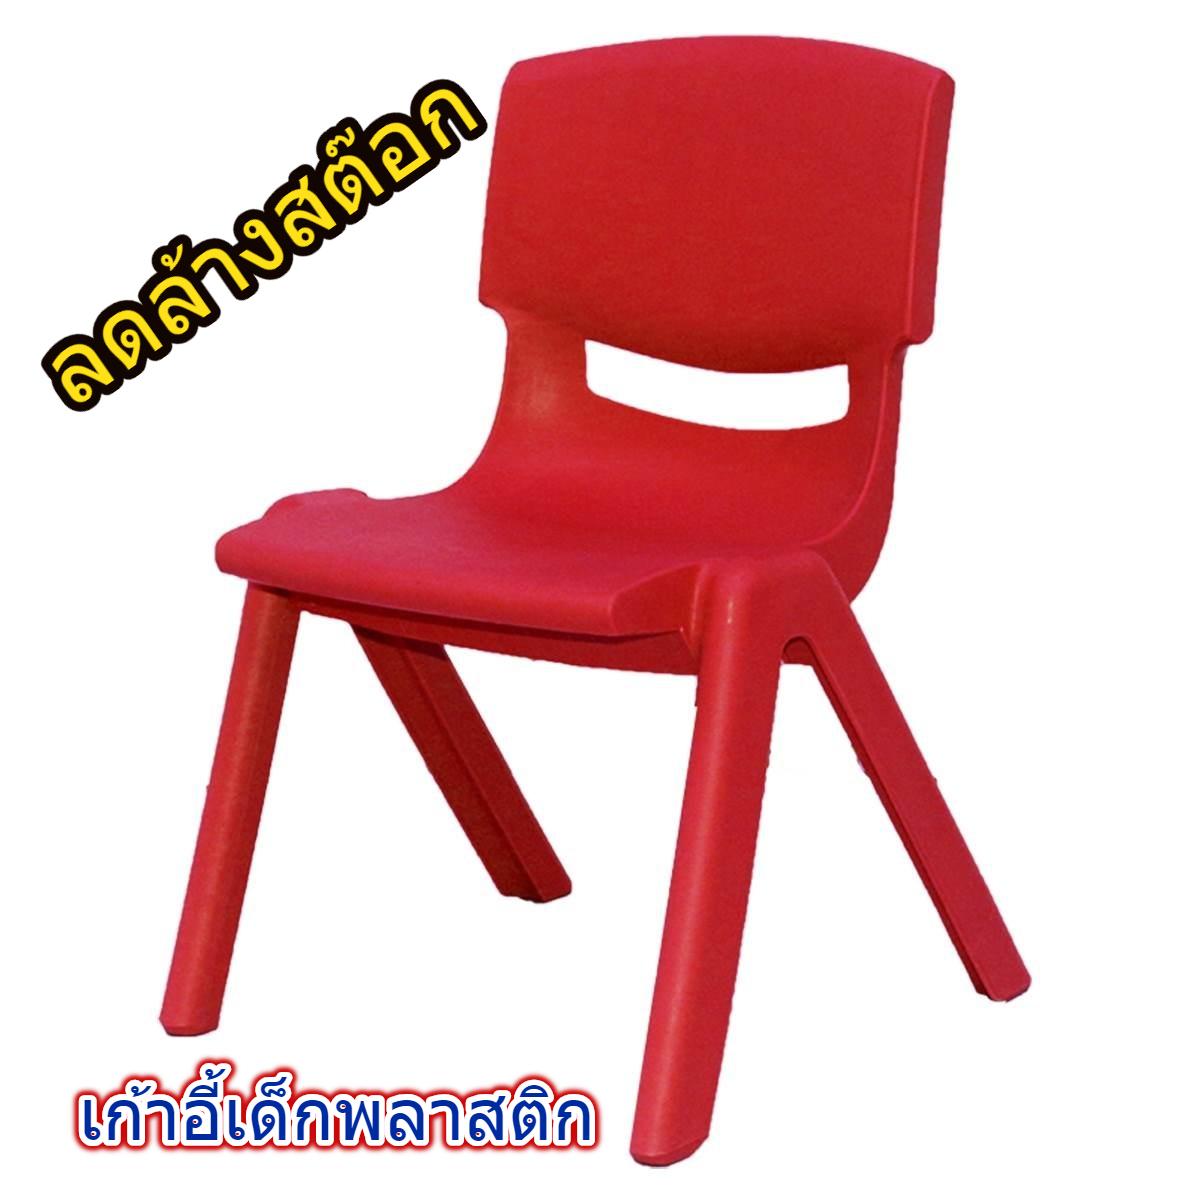 FINEXT เก้าอี้เด็กพลาสติก เก้าอี้นั่งเด็ก เก้าอี้นั่งสำหรับเด็ก ที่นั่งเด็ก [สีแดง]